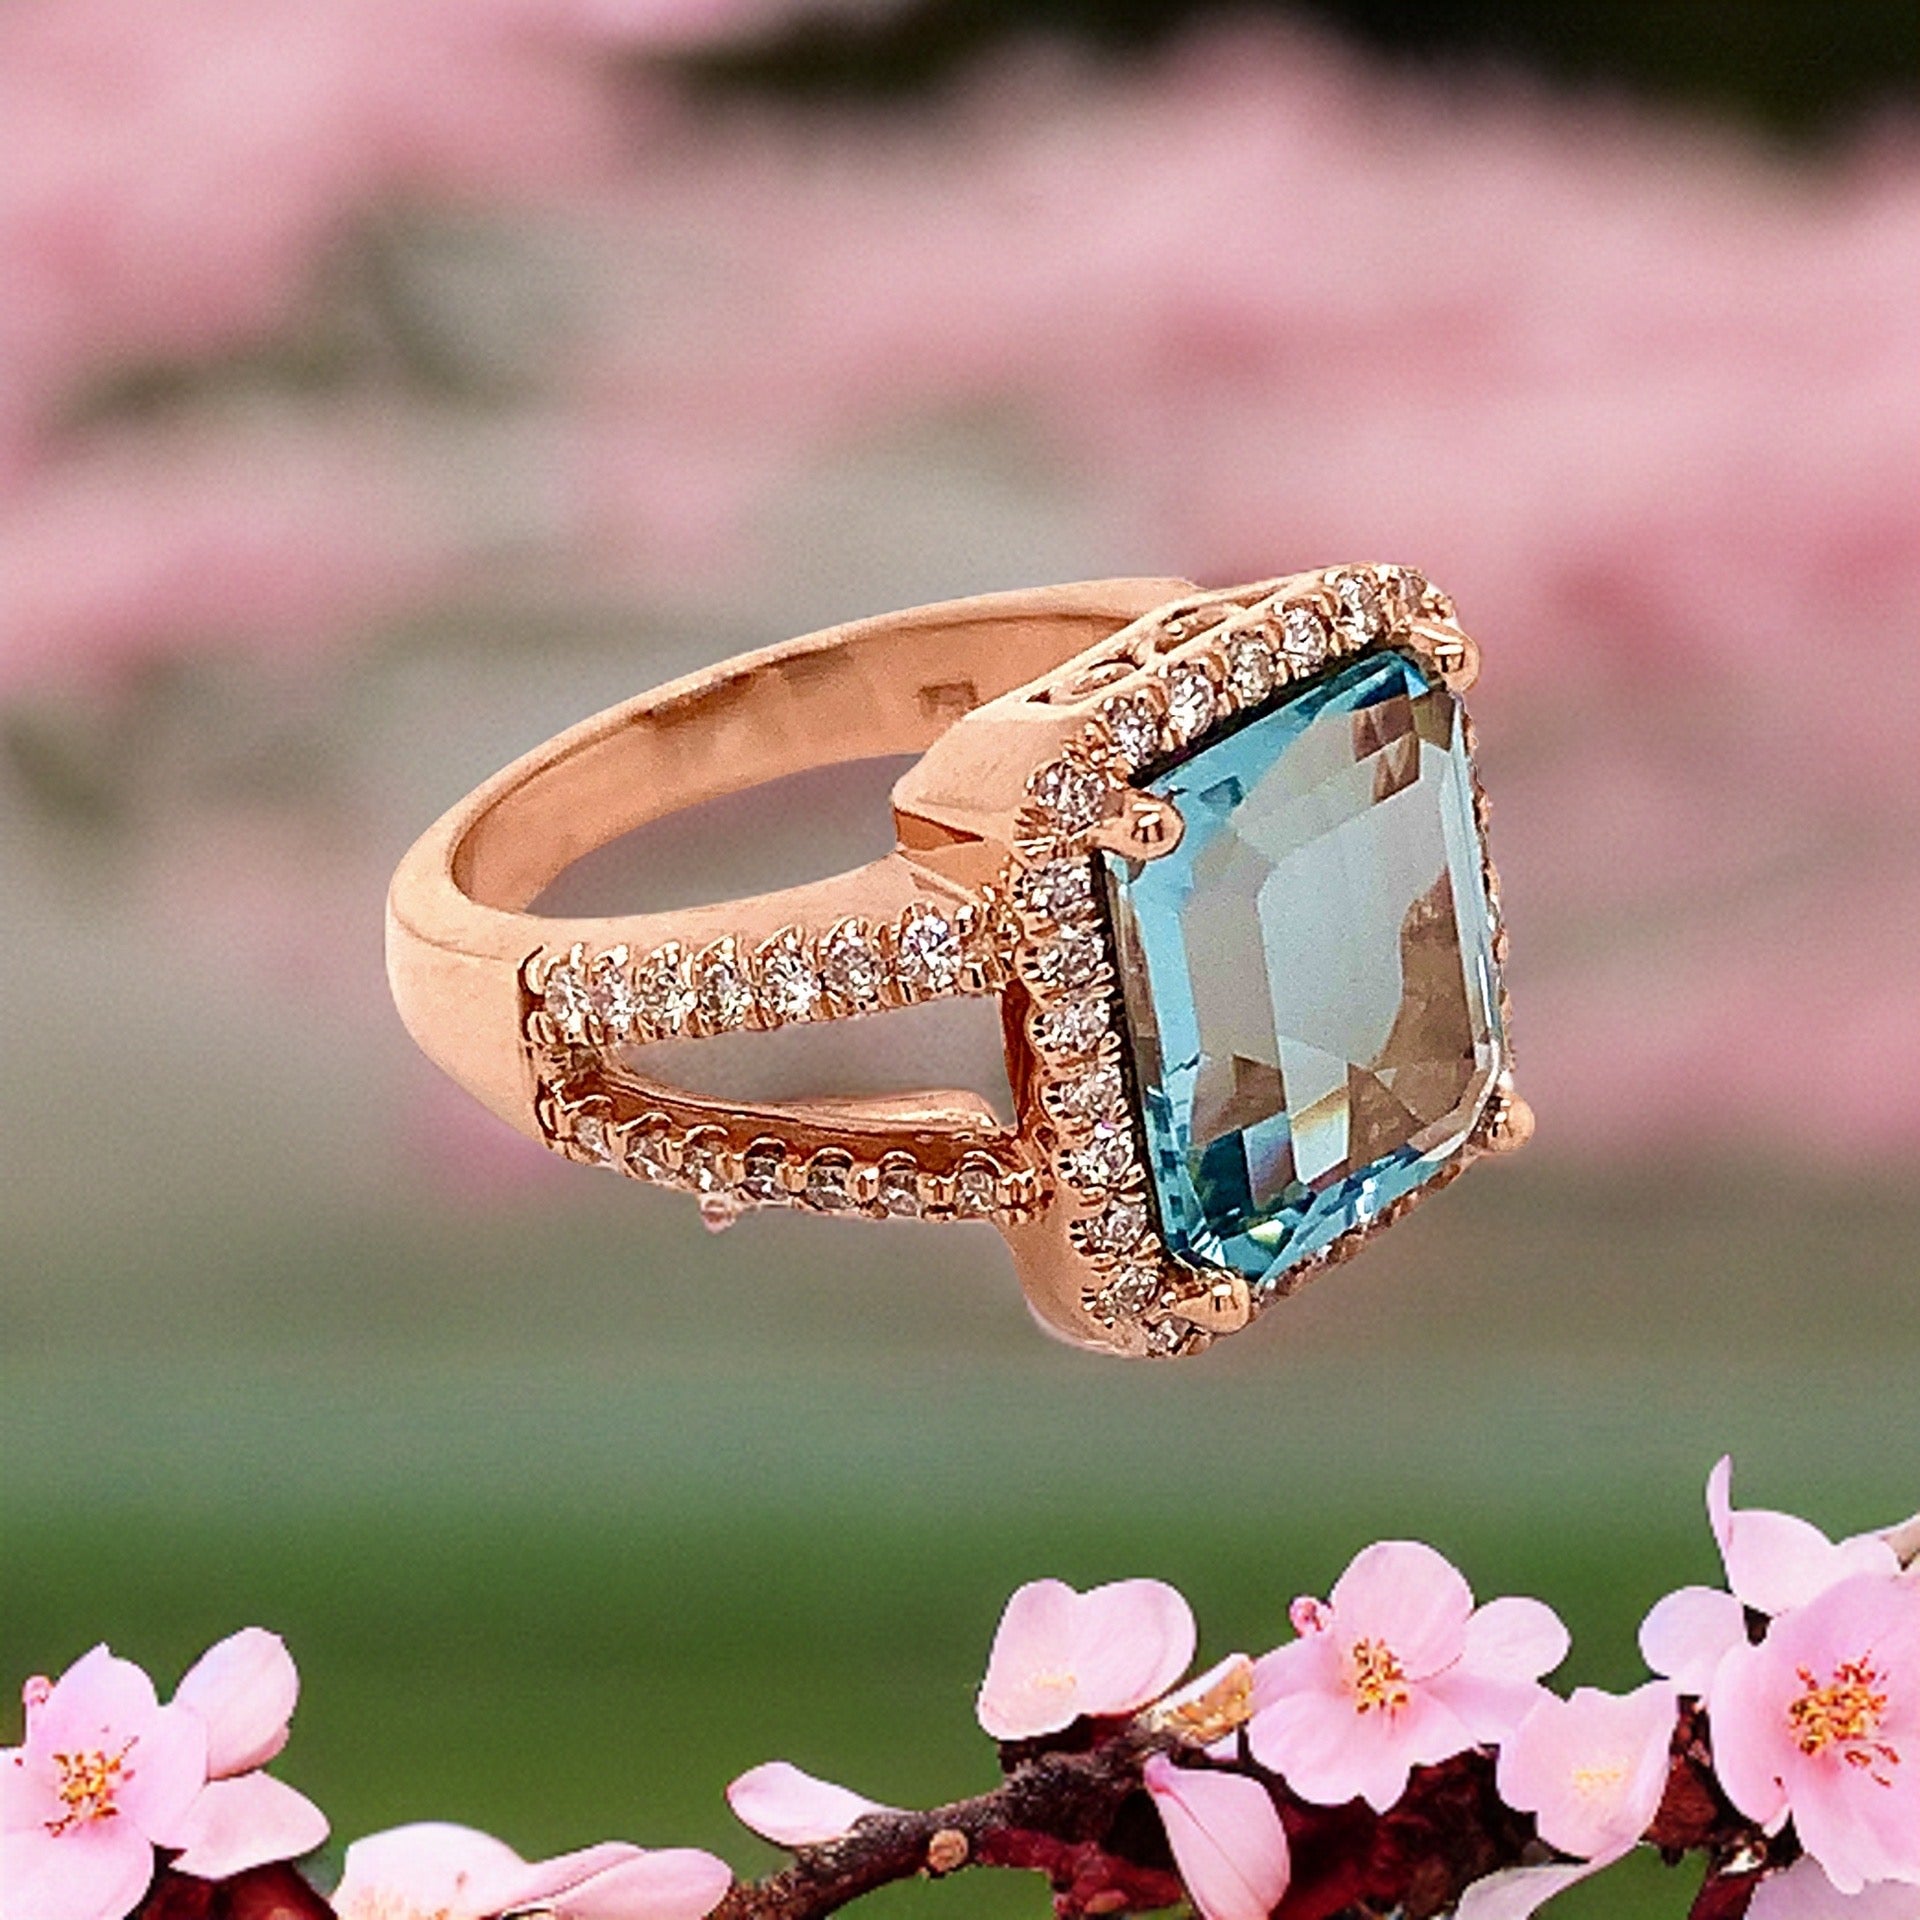 Diamond Aquamarine Ring Size 6.5 14k Gold 6.25 TCW Certified $6,950 120672 - Certified Fine Jewelry